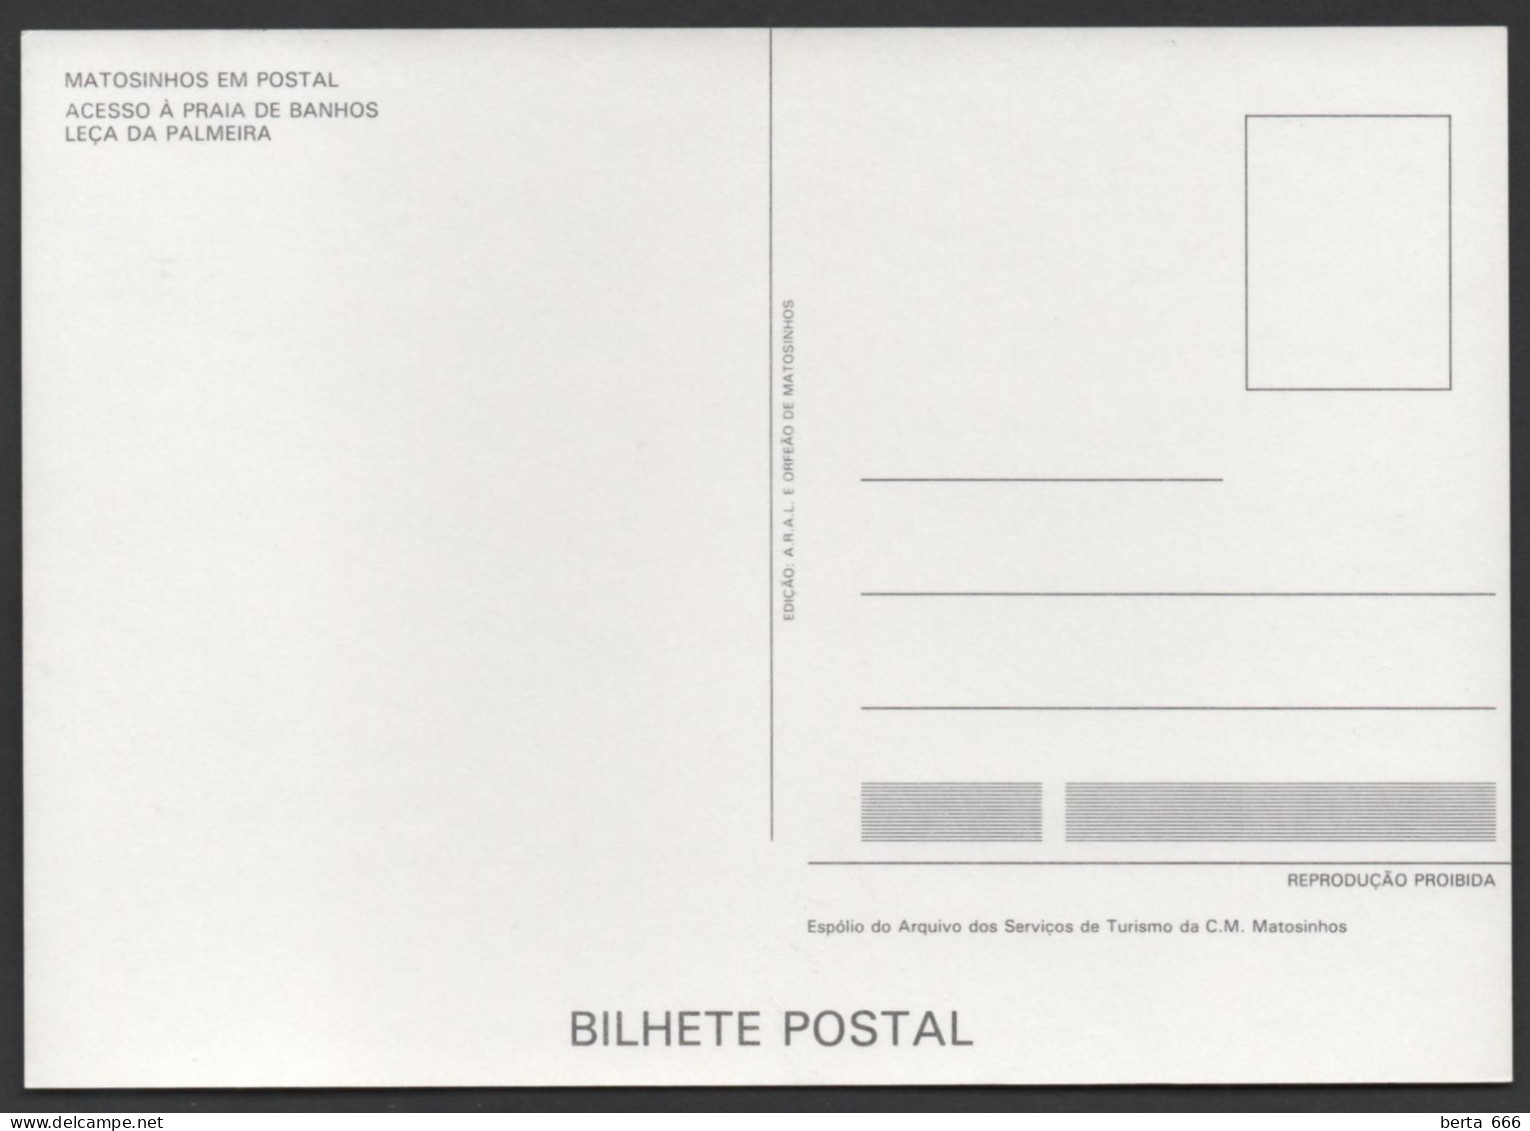 Portugal * Matosinhos em Postal * Pochette 8 Reproduções Postais Antigos * Edições Publiemes 1991